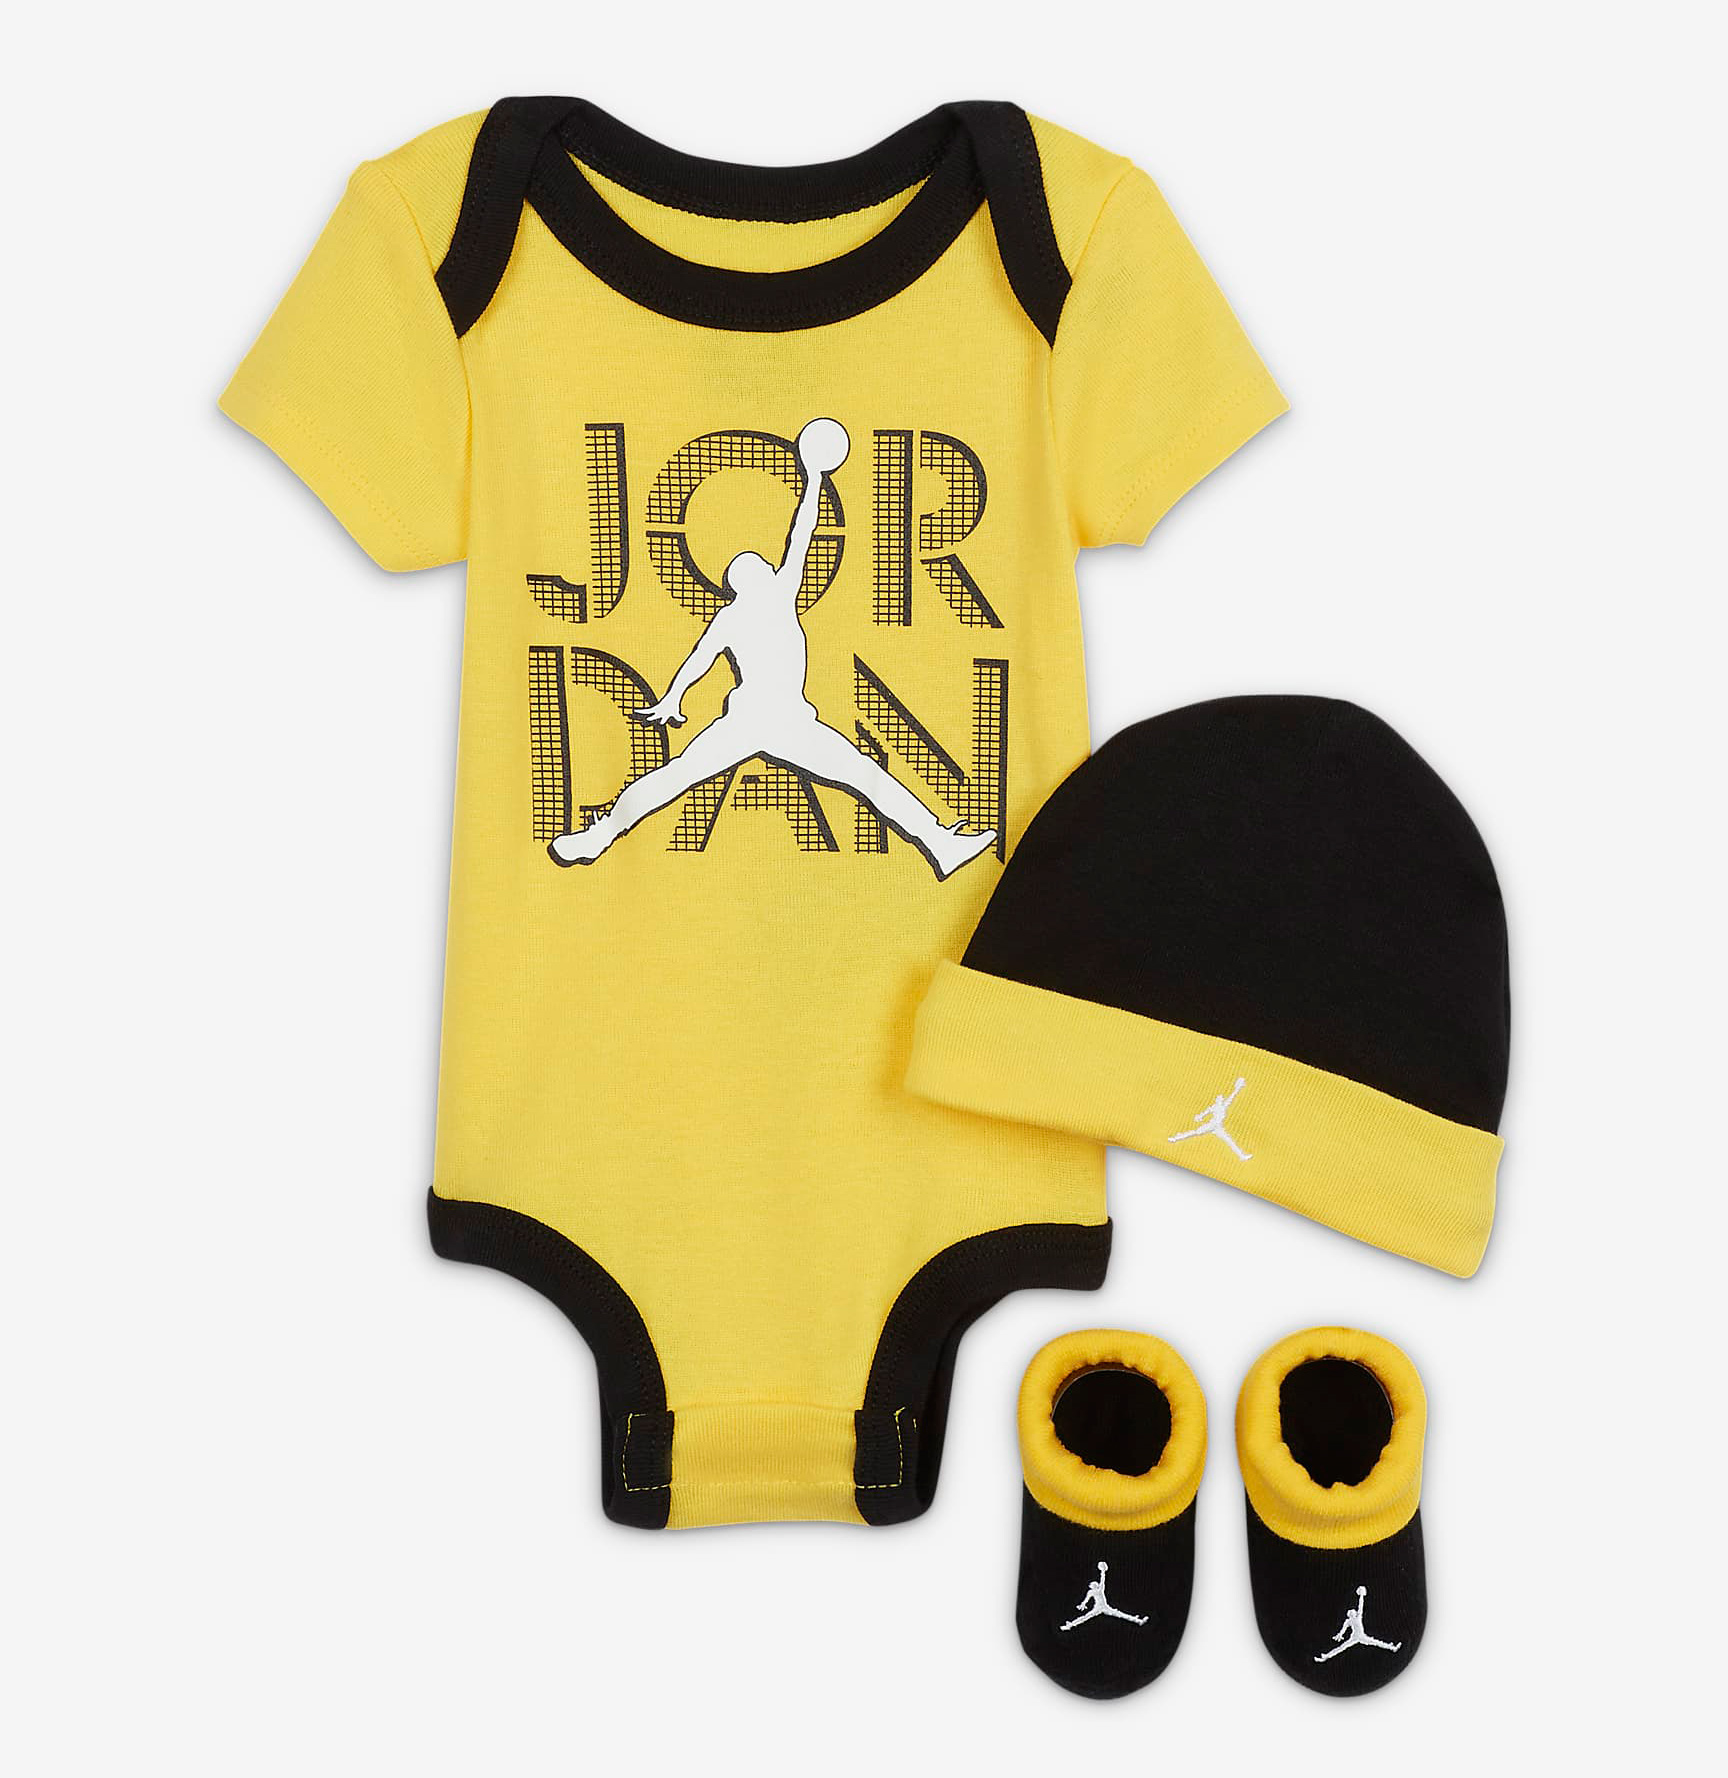 air-jordan-4-lightning-kids-baby-shirt-hat-clothing-set